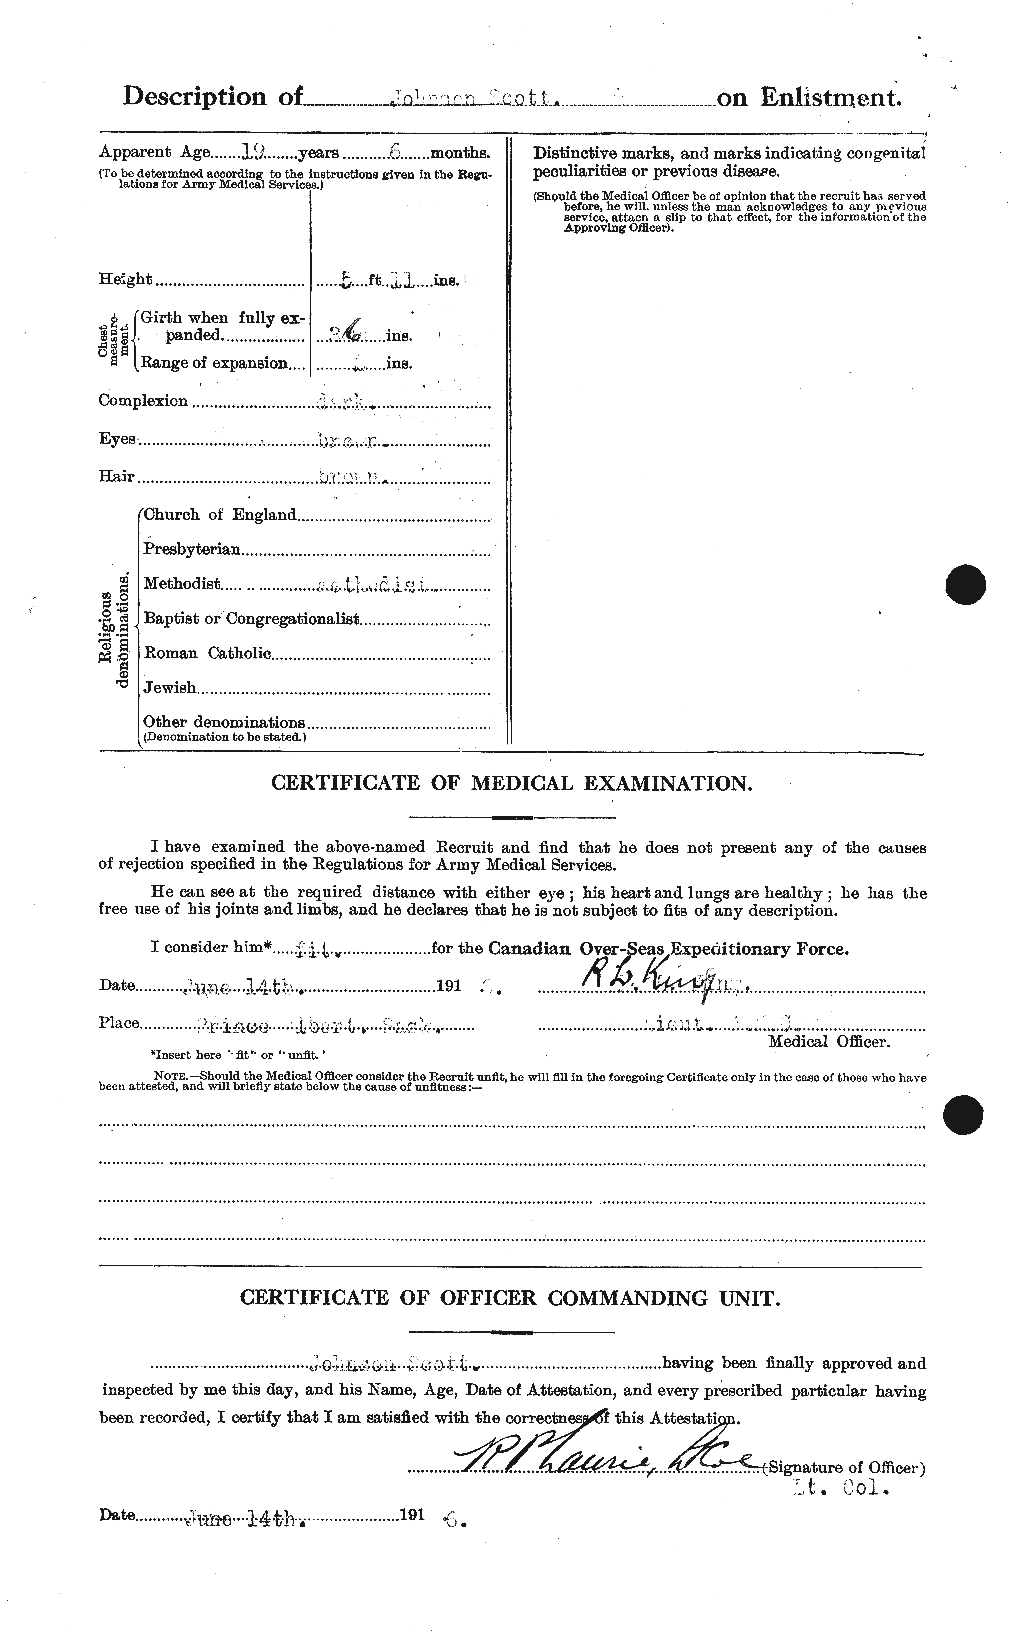 Dossiers du Personnel de la Première Guerre mondiale - CEC 084184b